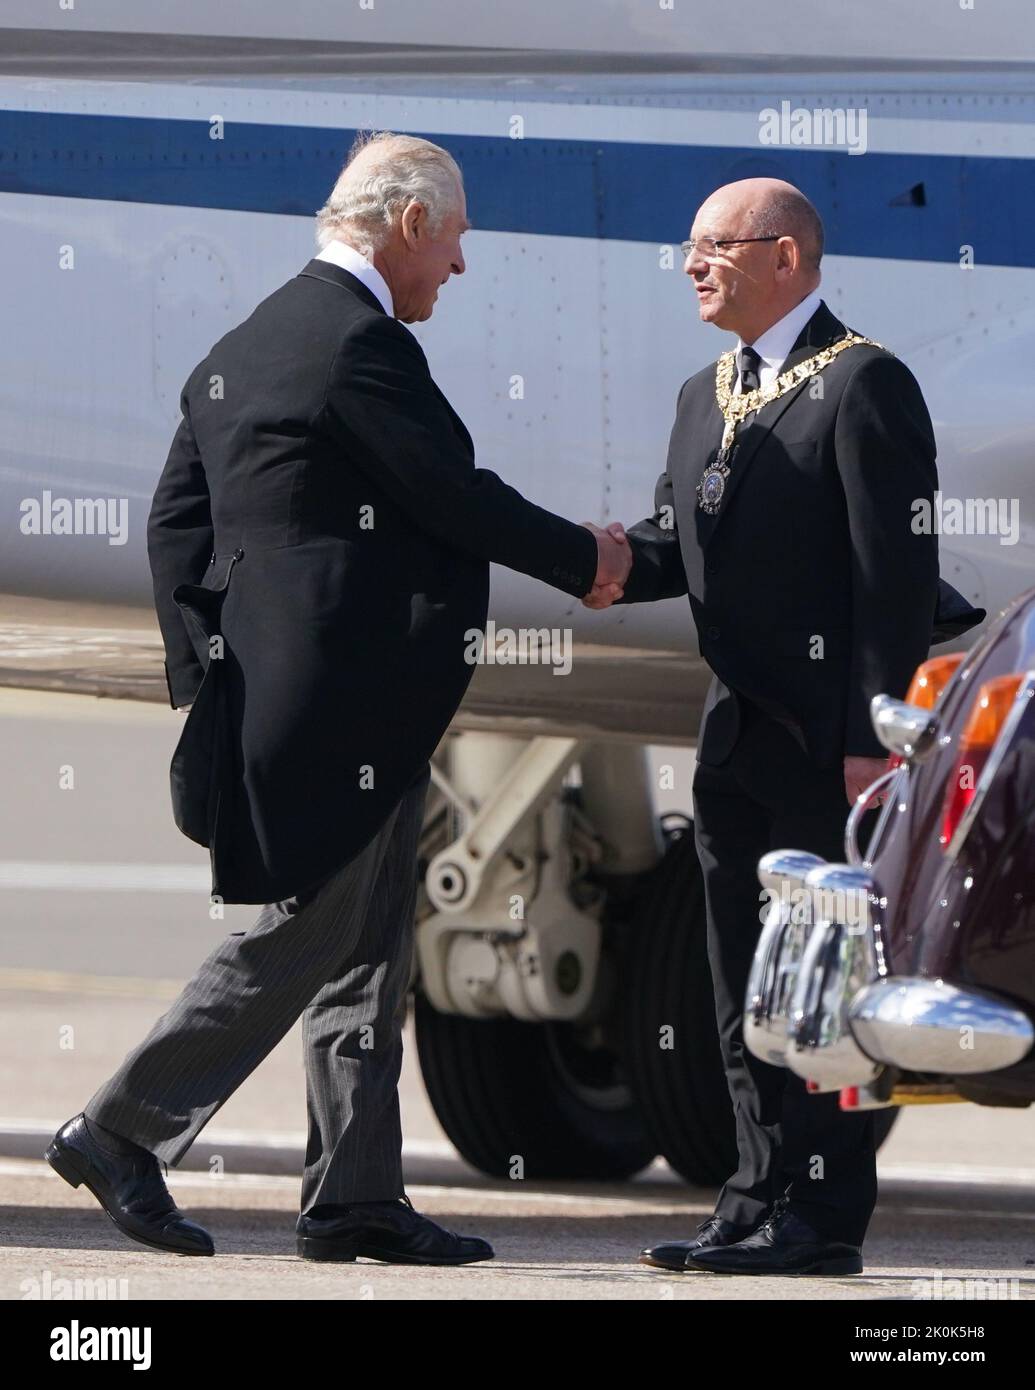 El rey Carlos III es recibido por Edimburgo Lord Provost Robert Aldridge, cuando llega al aeropuerto de Edimburgo después de viajar desde Londres con la Reina Consort, antes de unirse a la procesión del ataúd de la Reina Isabel desde el Palacio de Holyroodhouse hasta la Catedral de St Giles, Edimburgo. Fecha de la foto: Lunes 12 de septiembre de 2022. Foto de stock